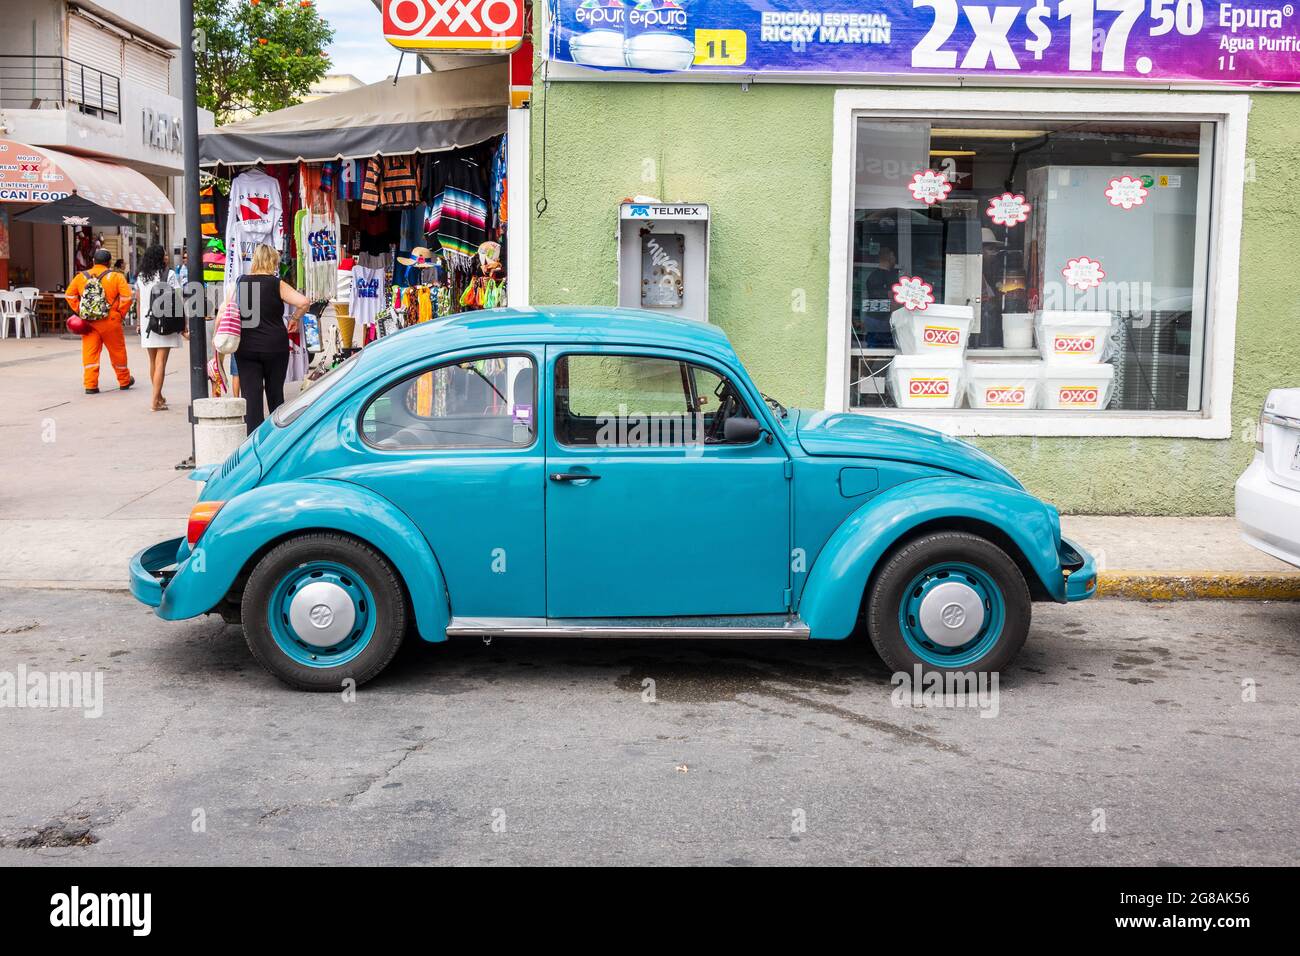 Blue Classic Vintage originale Volkswagen Beetle a Cozumel Messico parcheggiato su una strada della città, conosciuta come Volkswagen Bug negli Stati Uniti Foto Stock